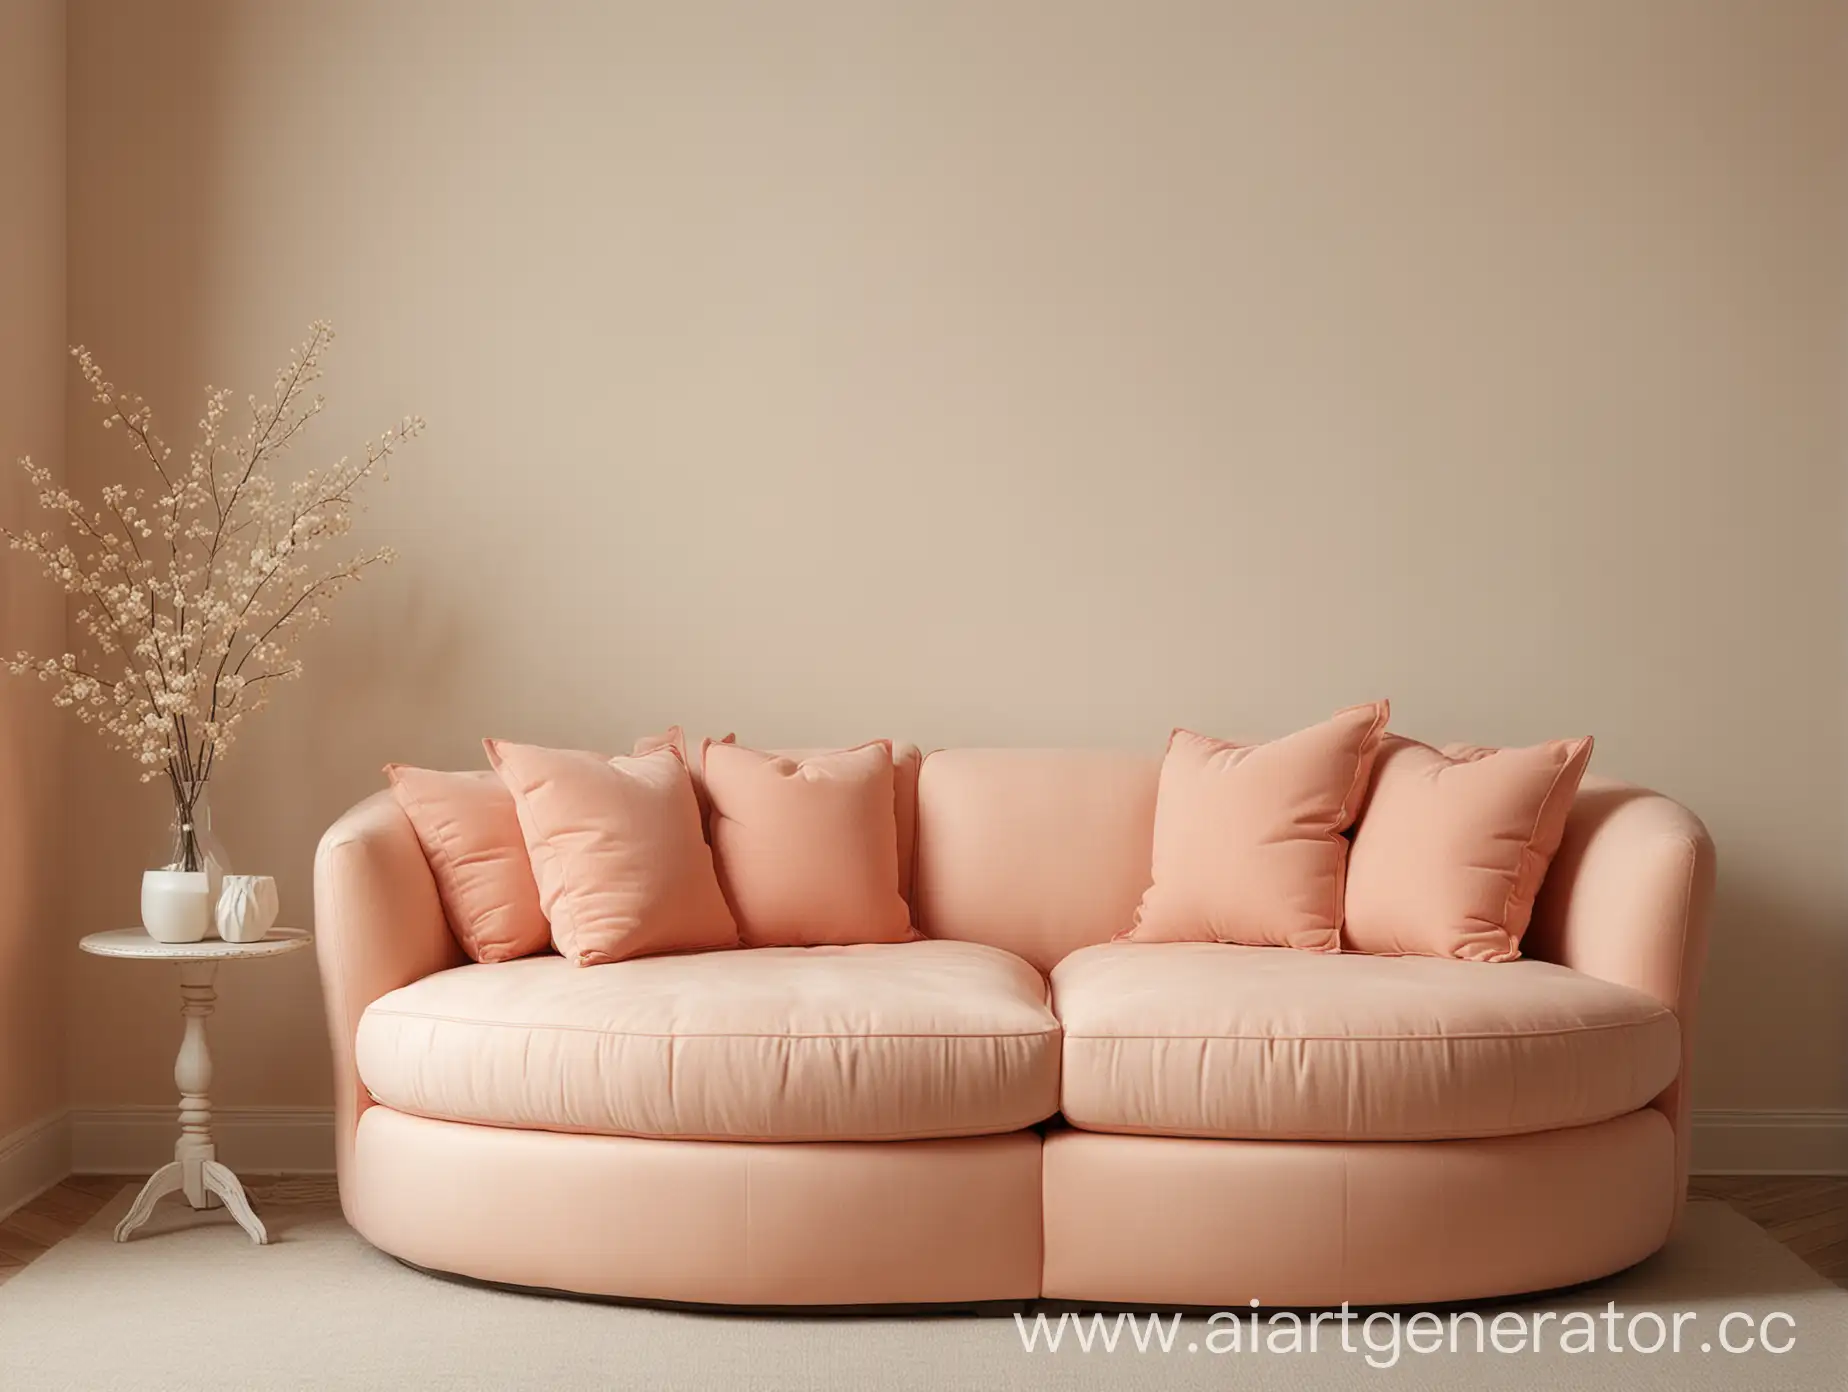 небольшой округлый мягкий диван кораллового цвета с двумя подушками слева на фоне однотонной стены цвета слоновой кости без лишних предметов вокруг 